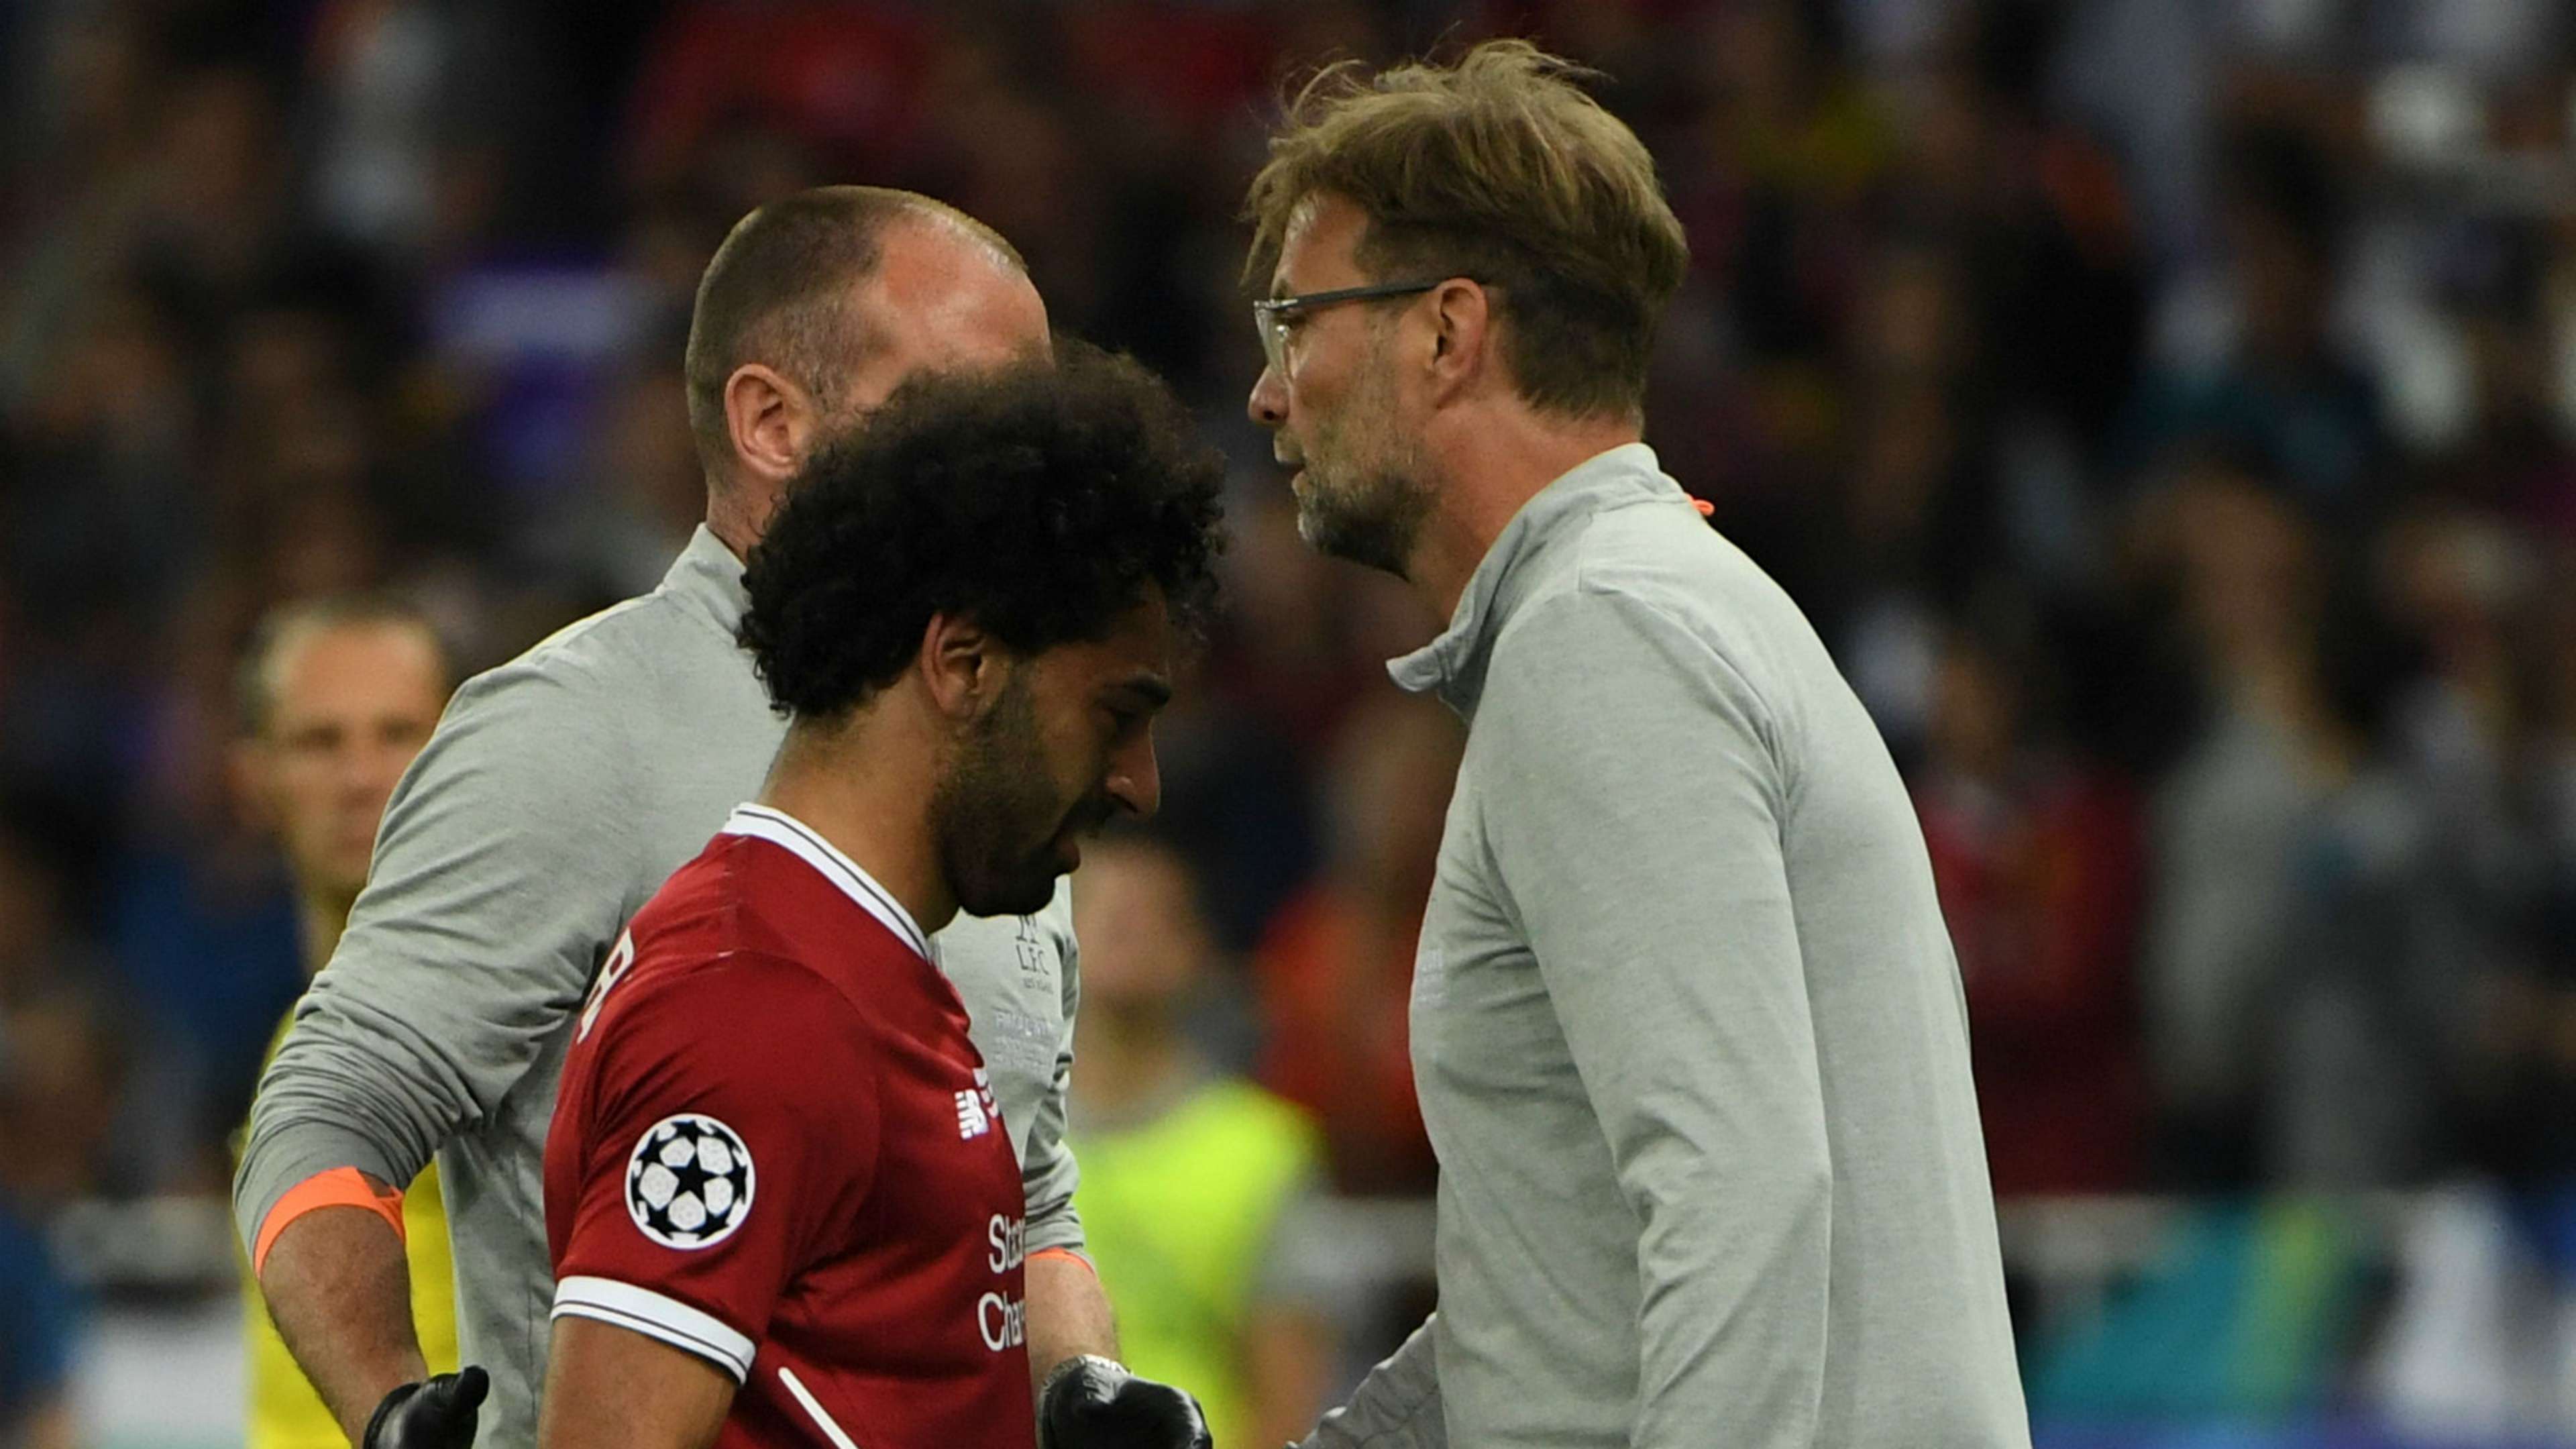 Jurgen Klopp Mohamed Salah Liverpool 2017-18